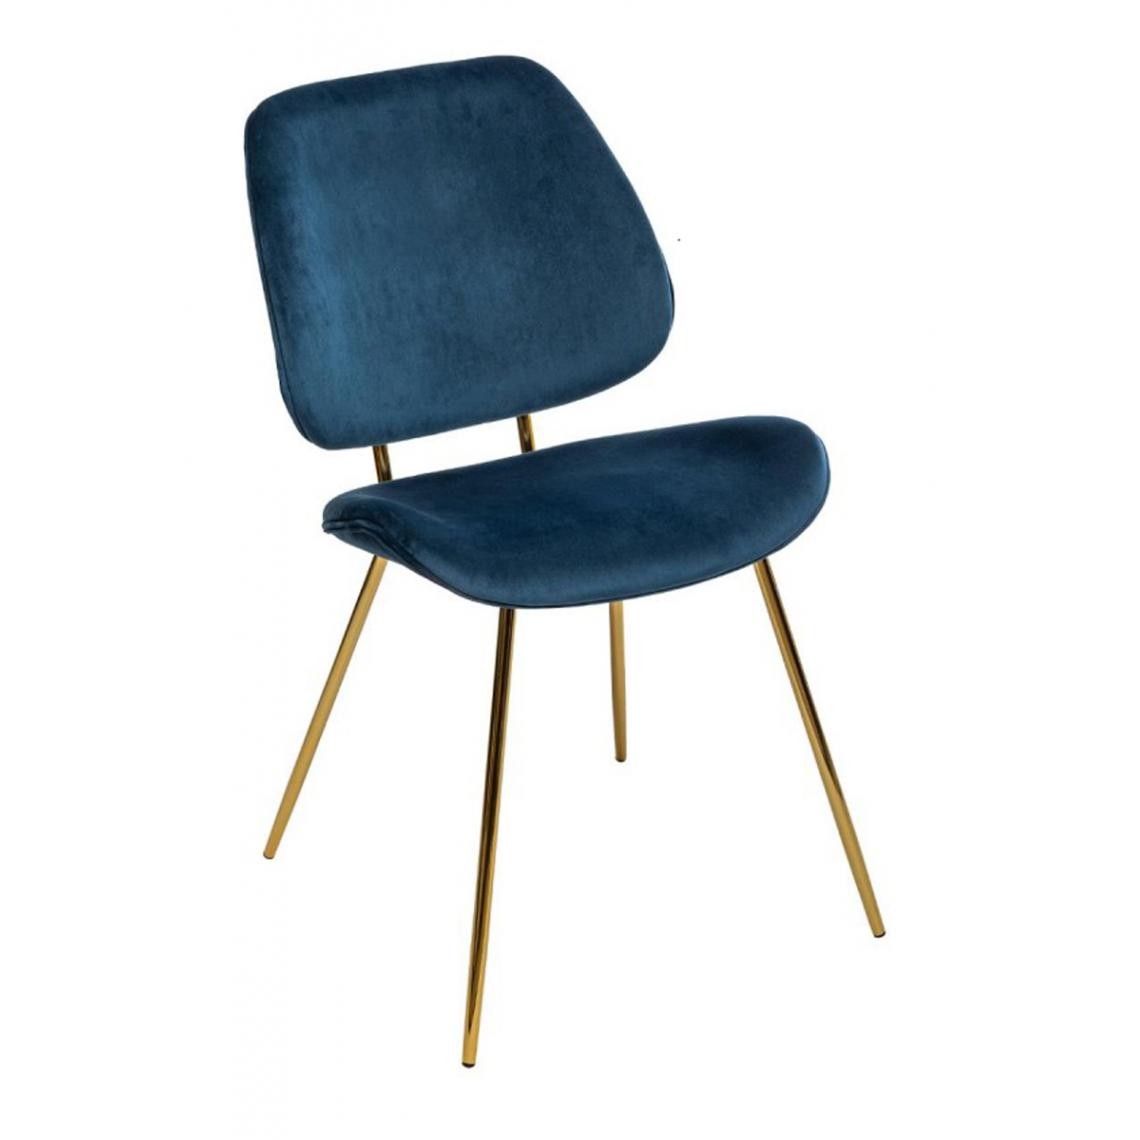 Pegane - Lot de 2 chaises coloris Bleu en velours - L. 47 x l. 54,5 x H. 82,5 cm - Chaises